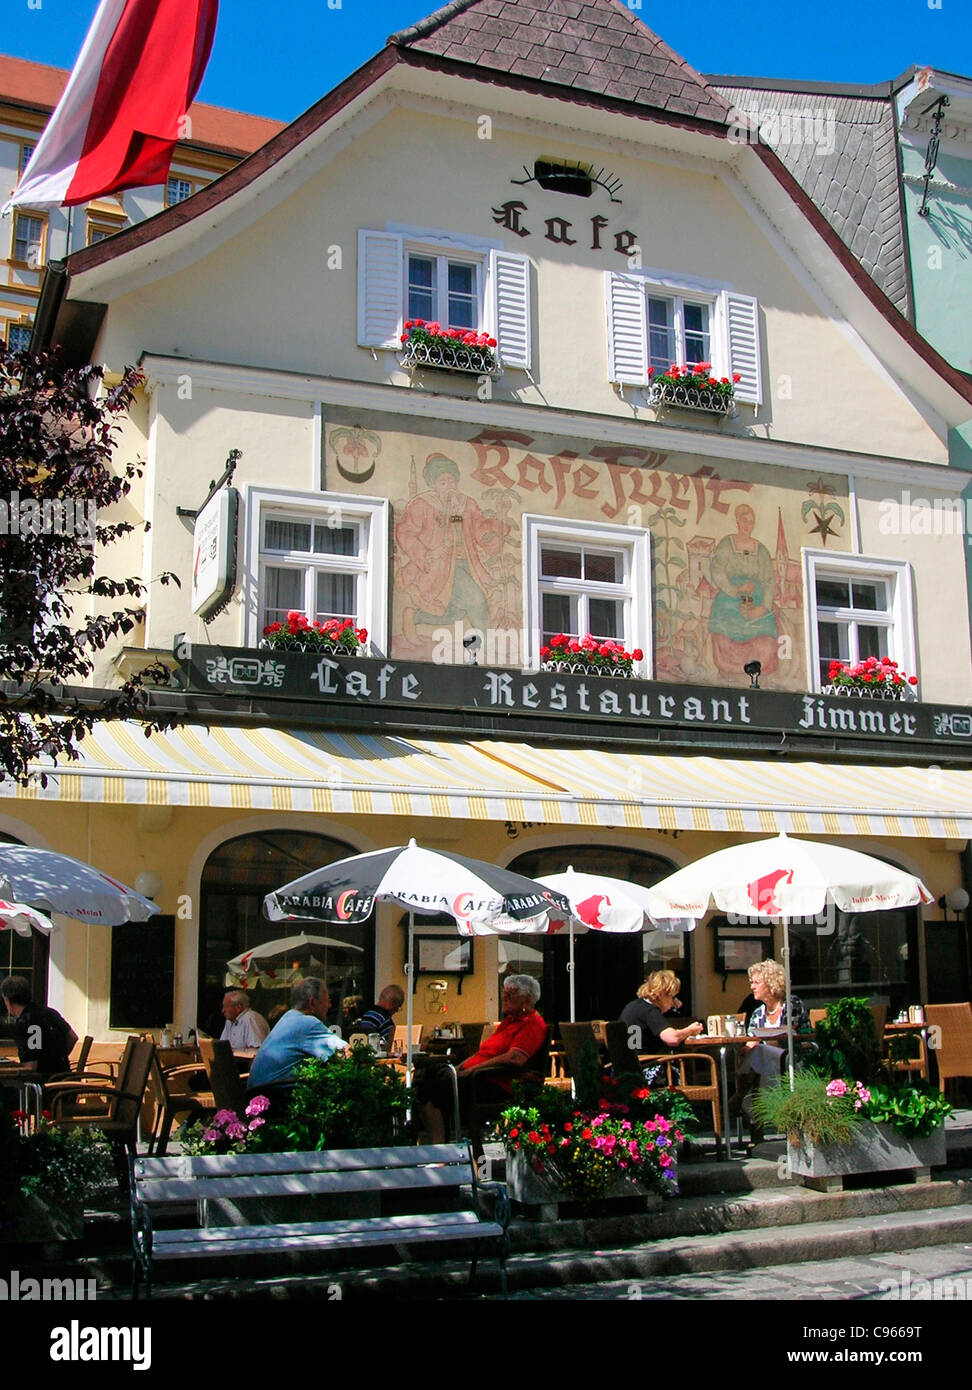 CAFE IN MELK,AUSTRIA Stock Photo